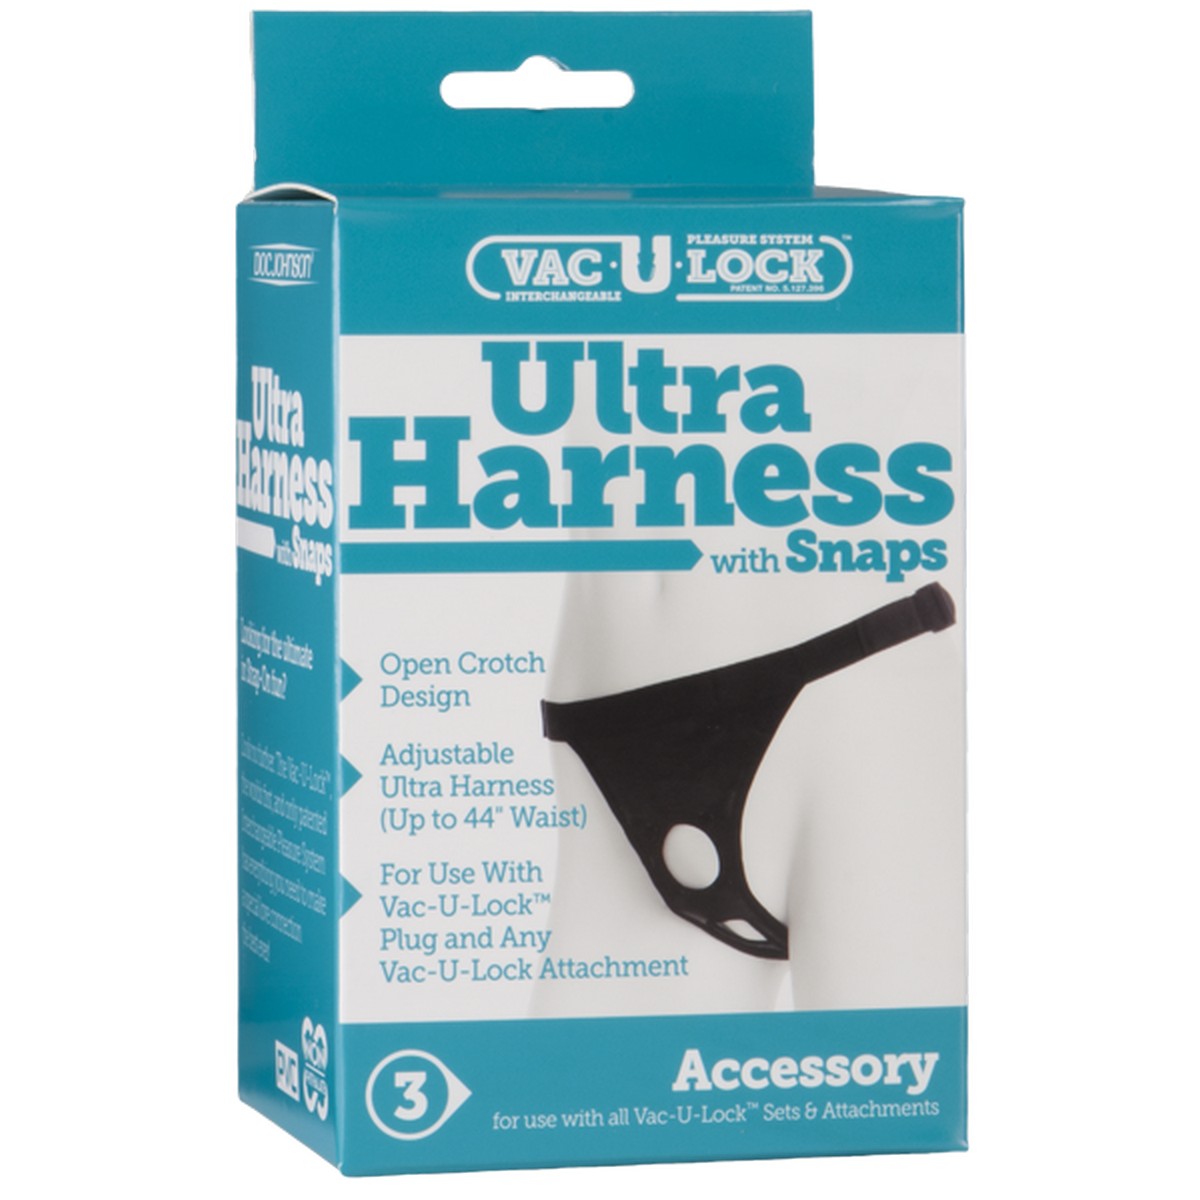   Harness (Vac-U-Lock)